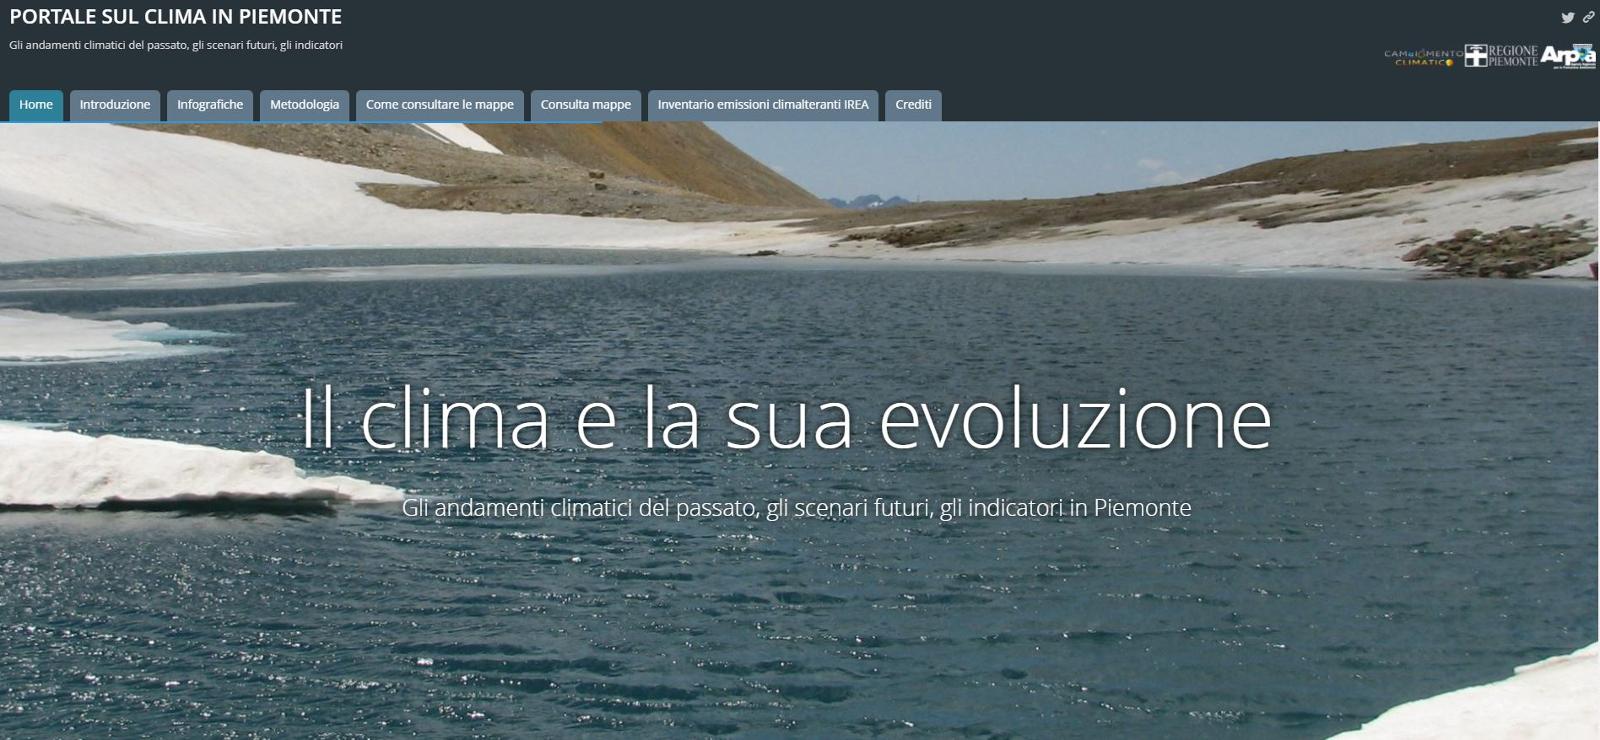 Pubblicato il portale sul clima in Piemonte